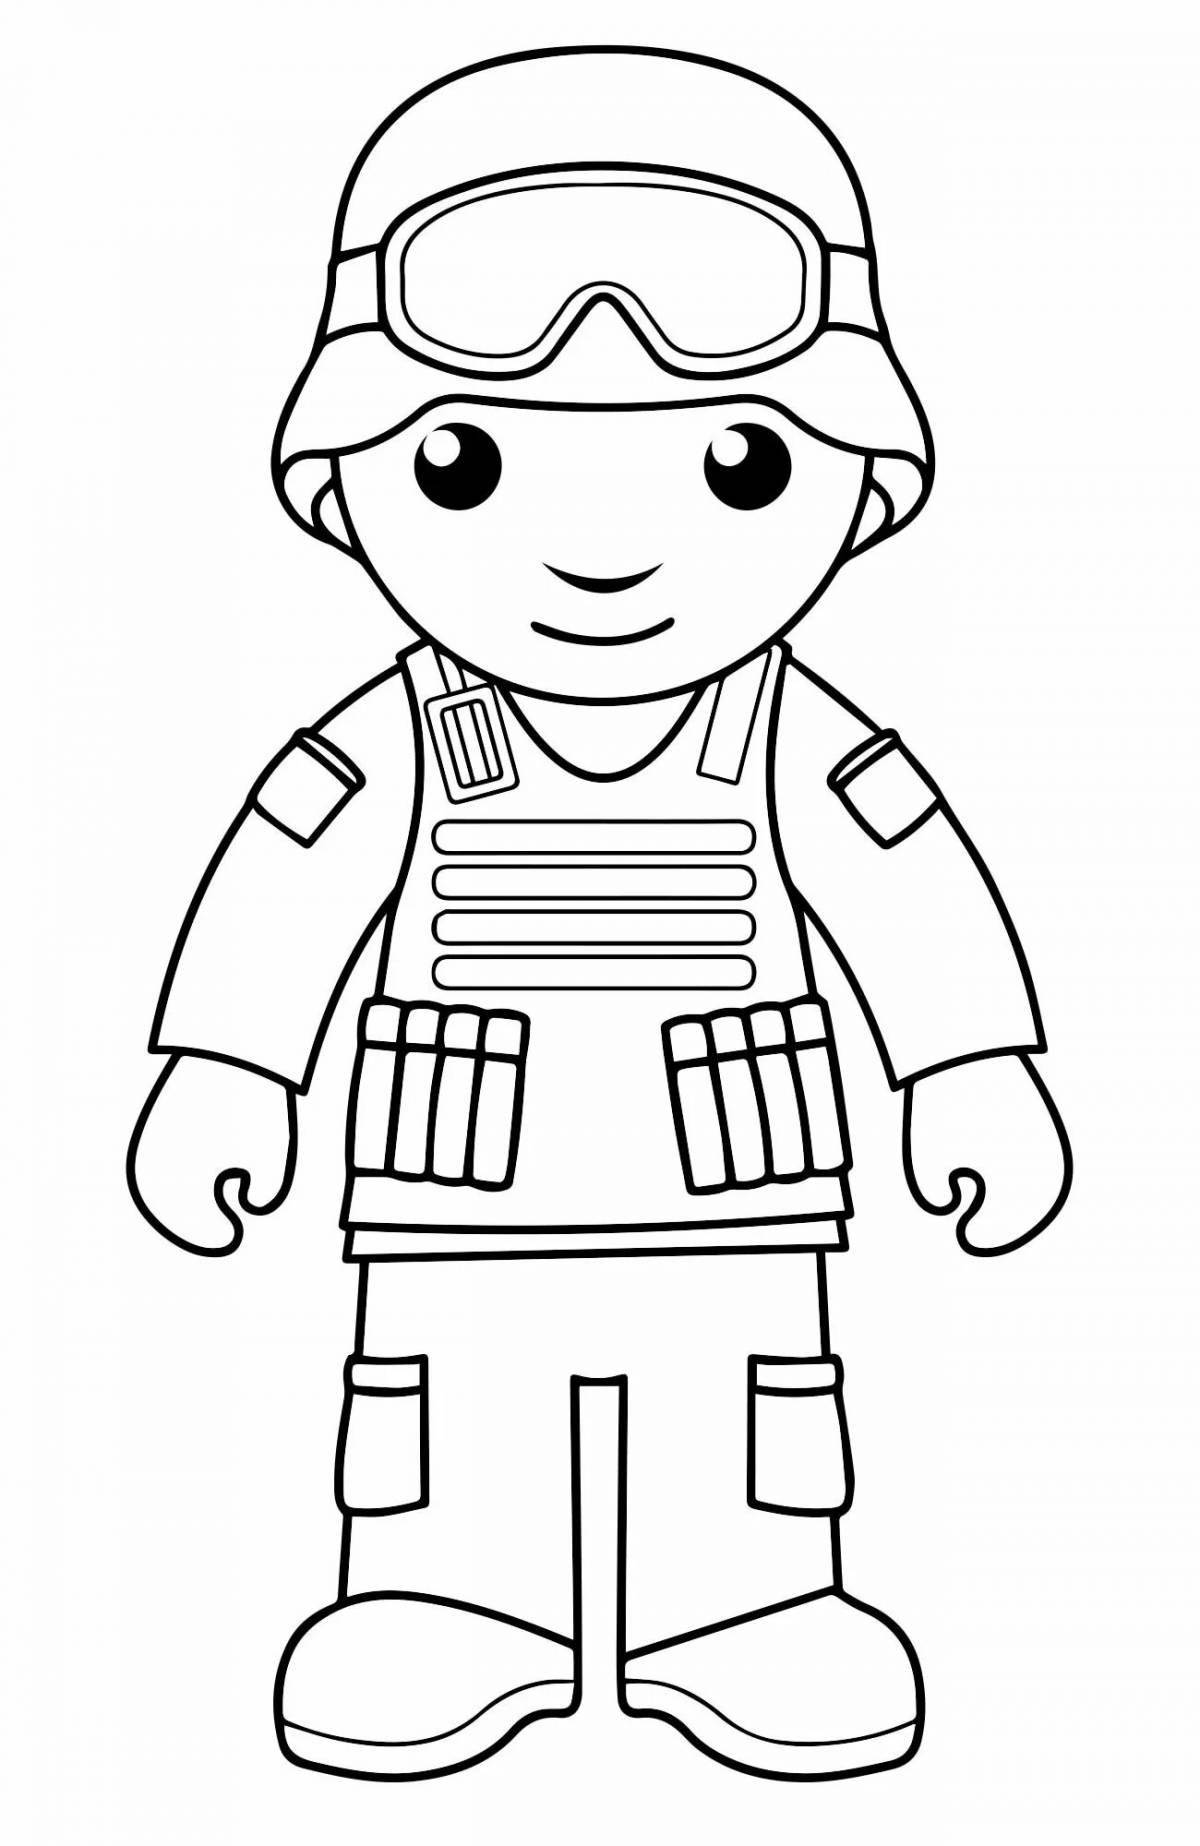 Раскраска доблестный солдат для детей